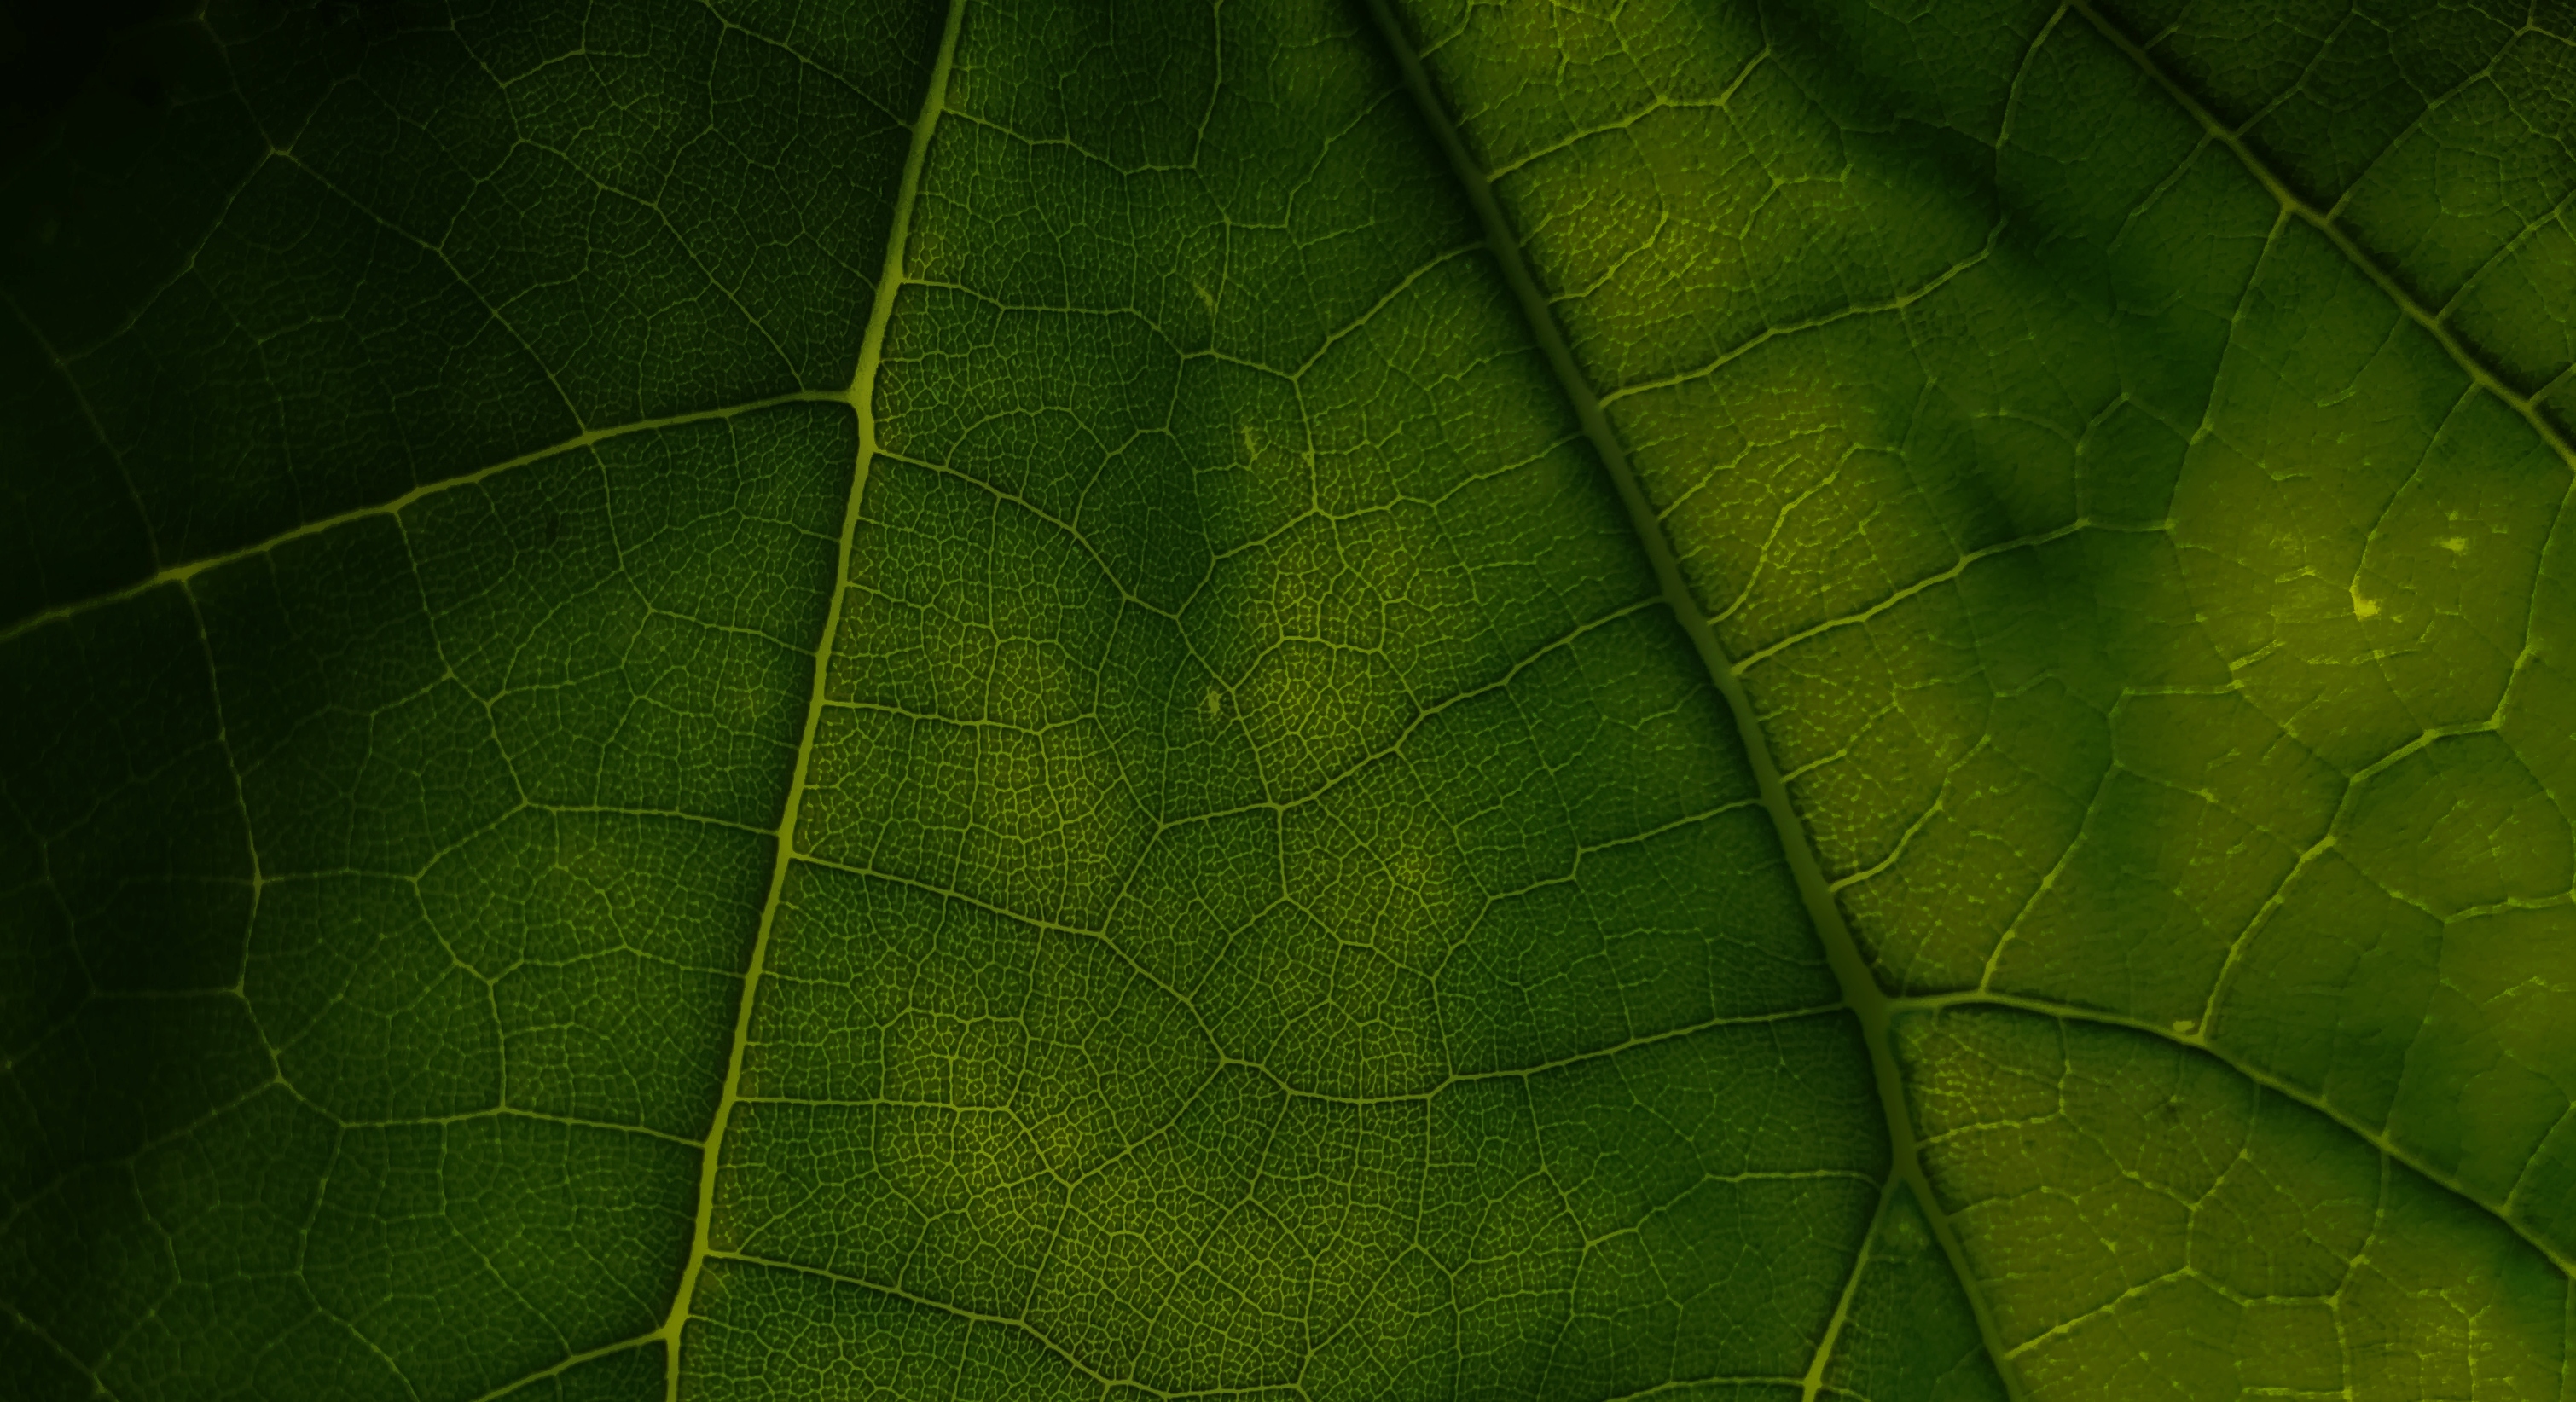 Close up of a leaf